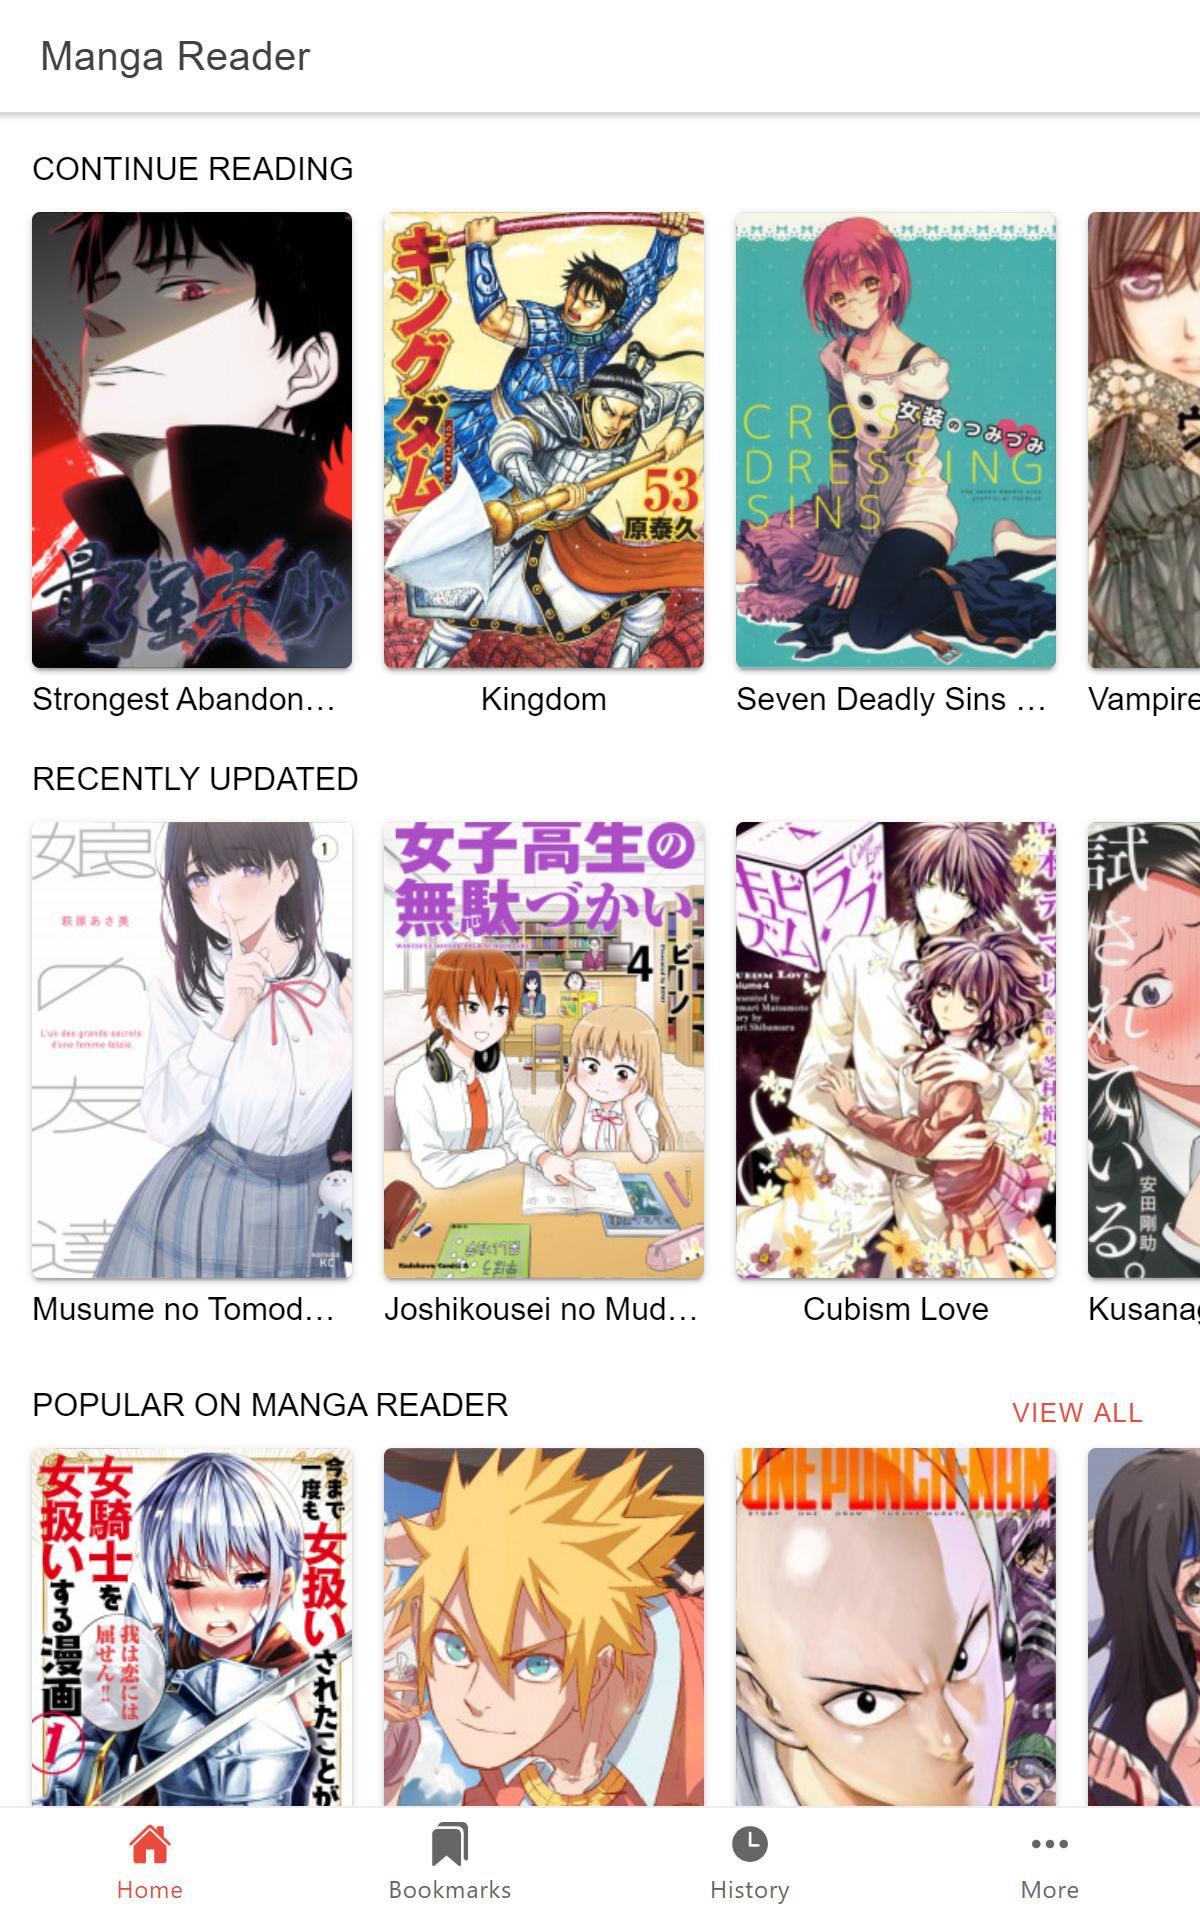 Manga Reader Read manga online free mangareader 0.0.12 Screenshot 11